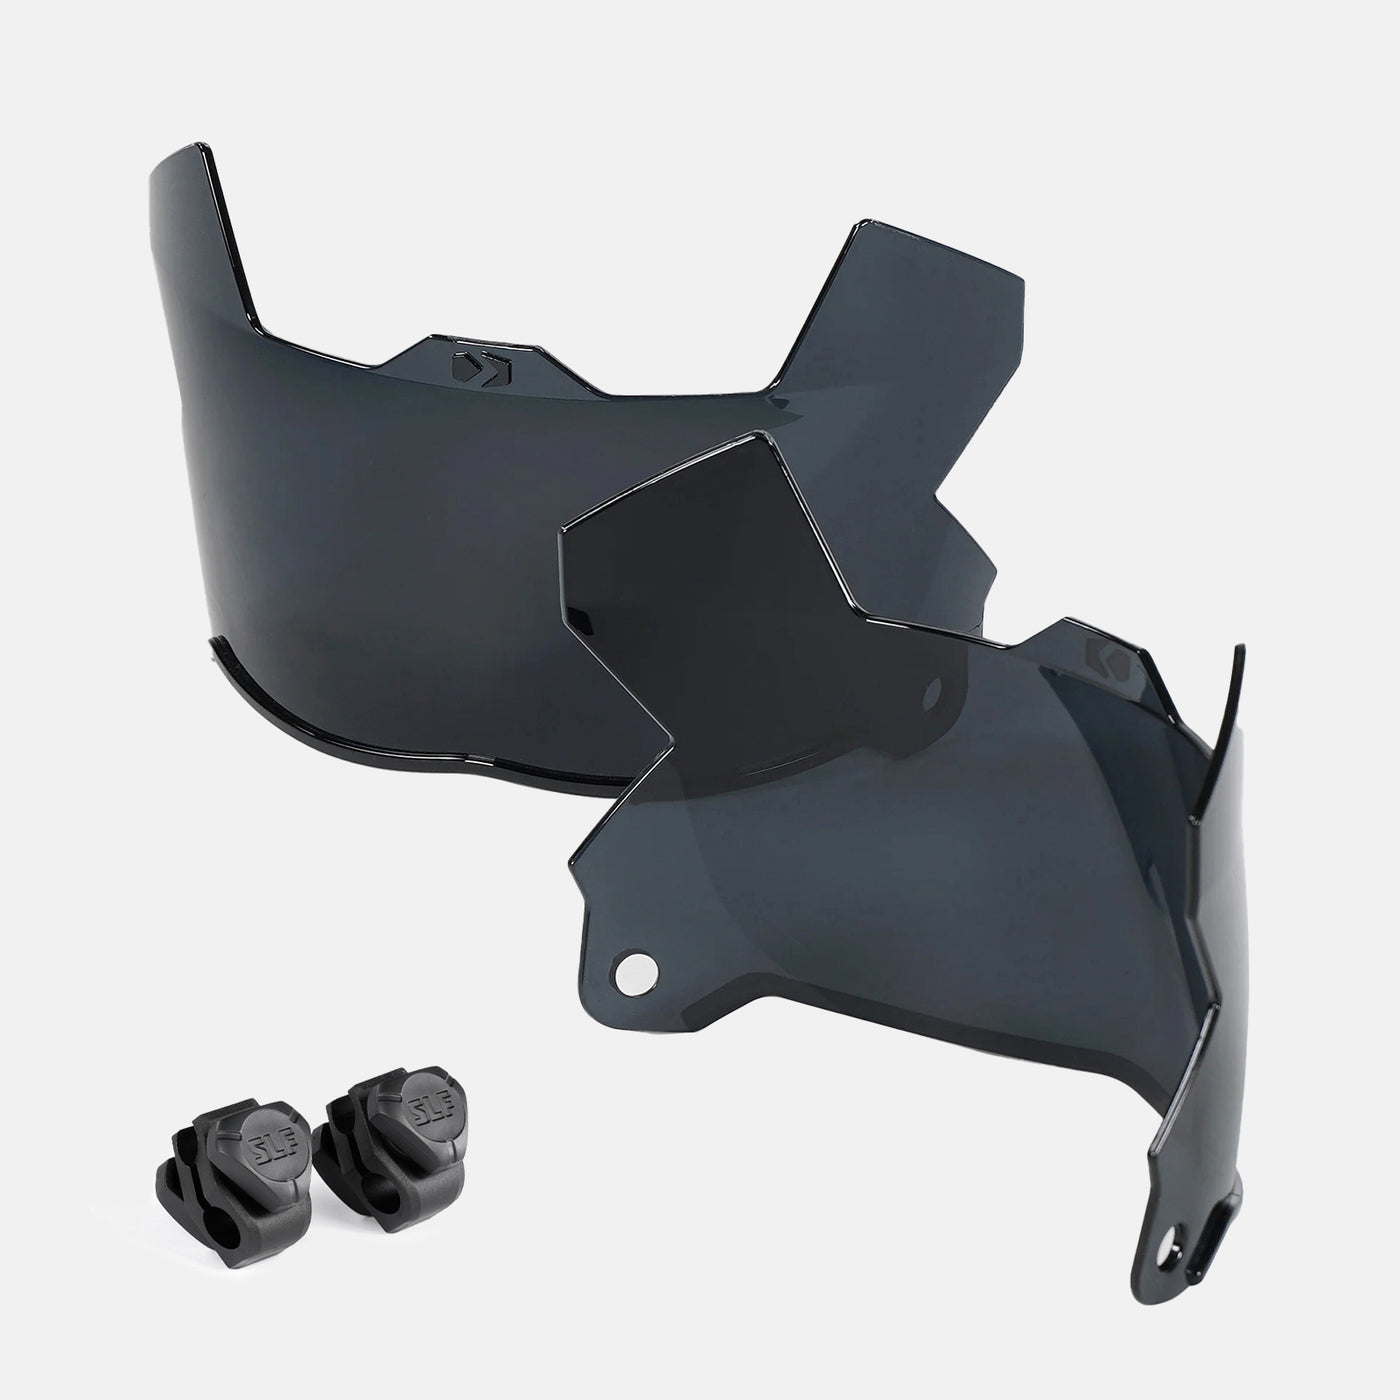 Basic Black SX2 Helmet Eye-Shield Visor